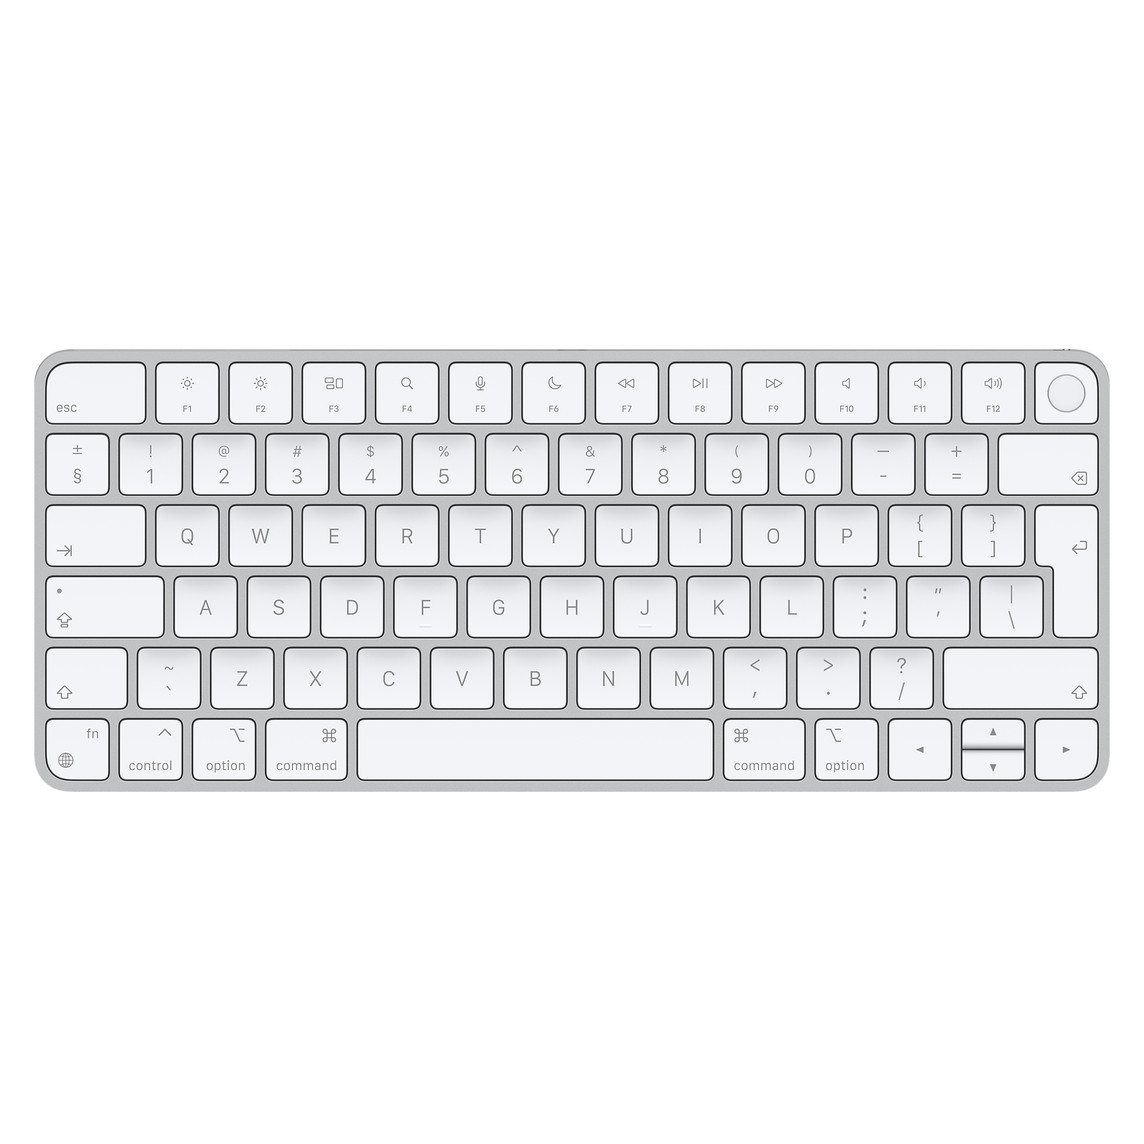 Klawiatura Magic Keyboard z Touch ID jest bezprzewodowa i można ją wielokrotnie ładować, a do tego pisze się na niej wyjątkowo wygodnie i precyzyjnie.